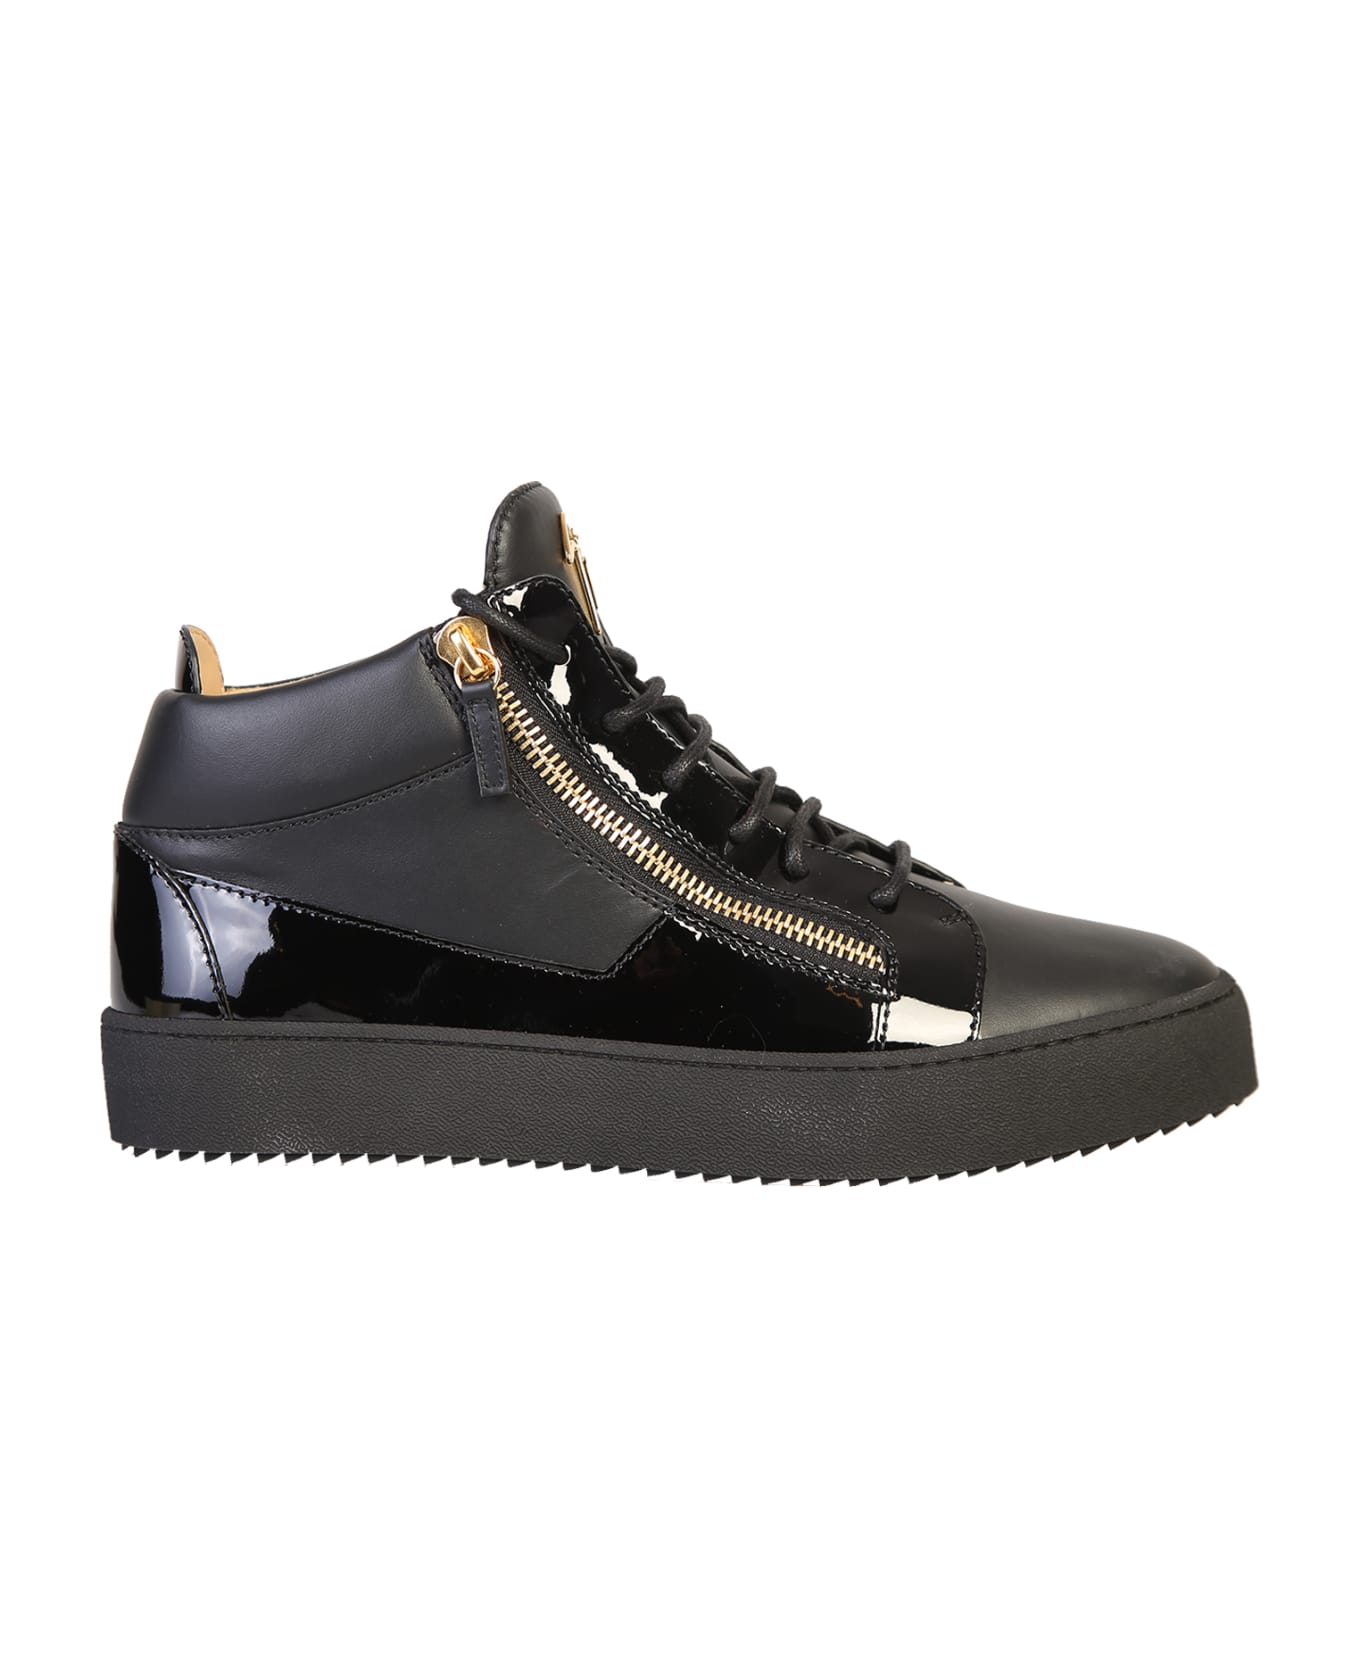 Giuseppe Zanotti Branded Sneakers - Black スニーカー